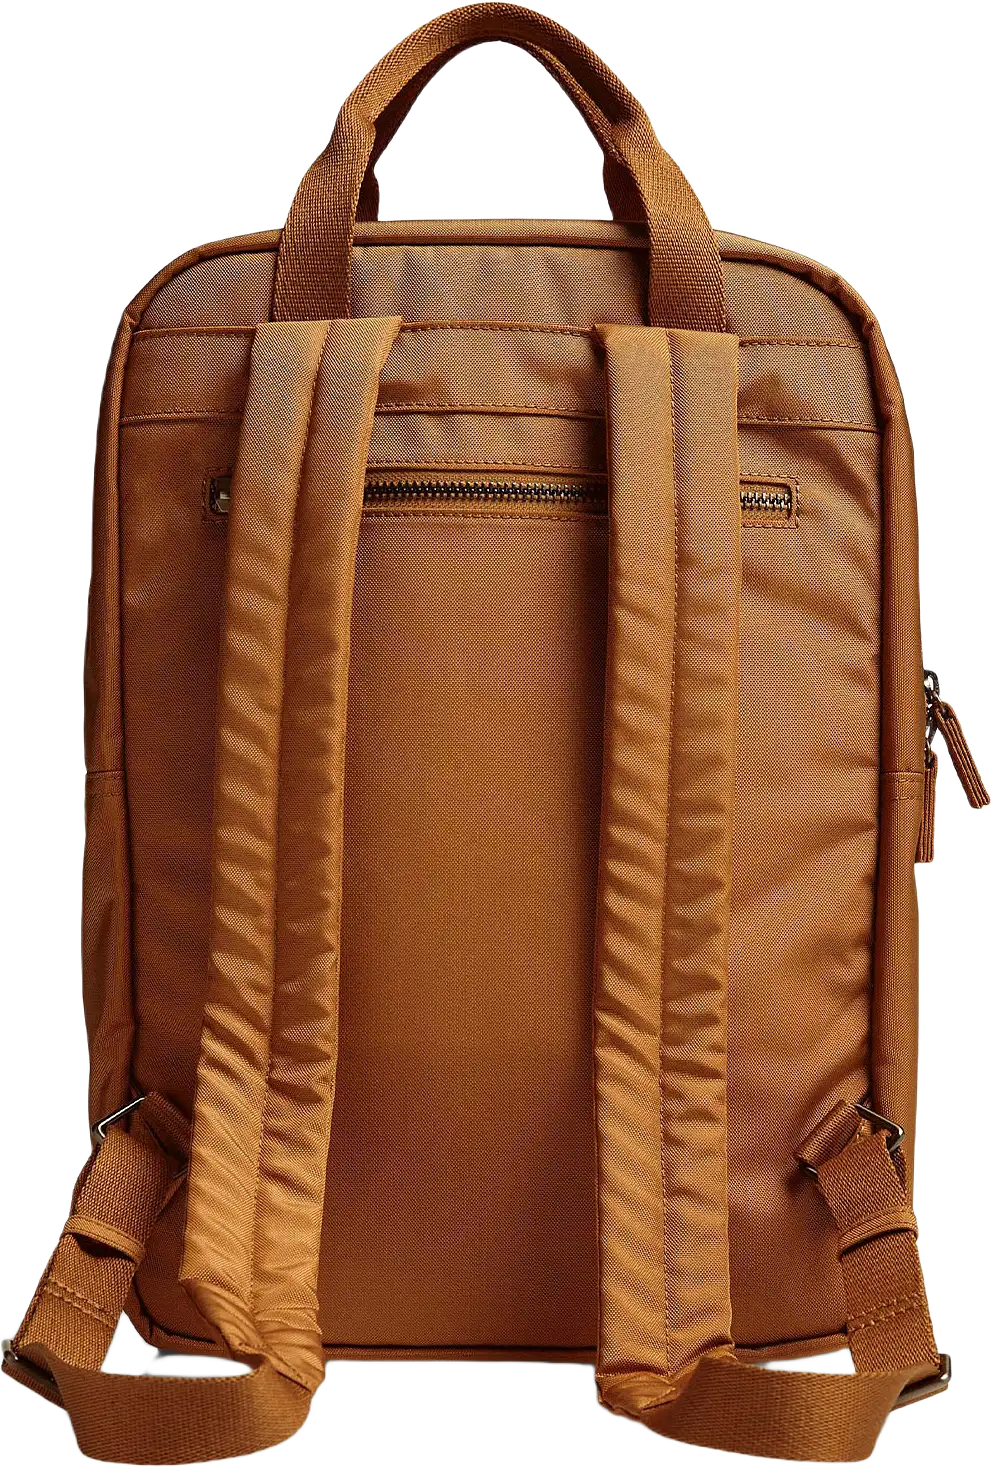 Darla Backpack Monochrome Bag